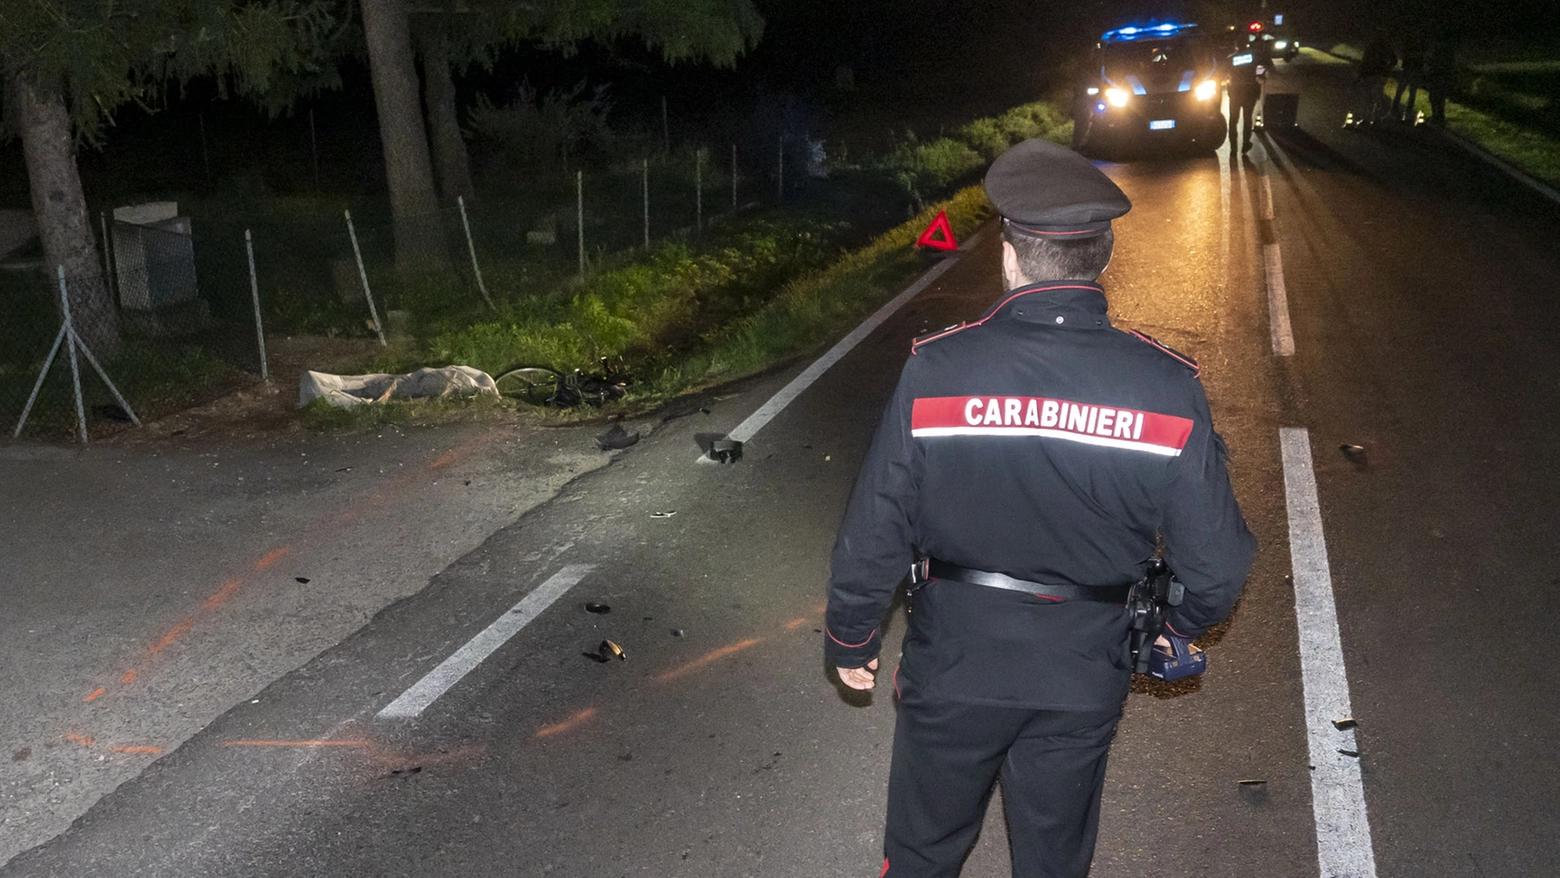 Tragedia nella serata di venerdì a Faenza: ha perso la vita un uomo di 45 anni